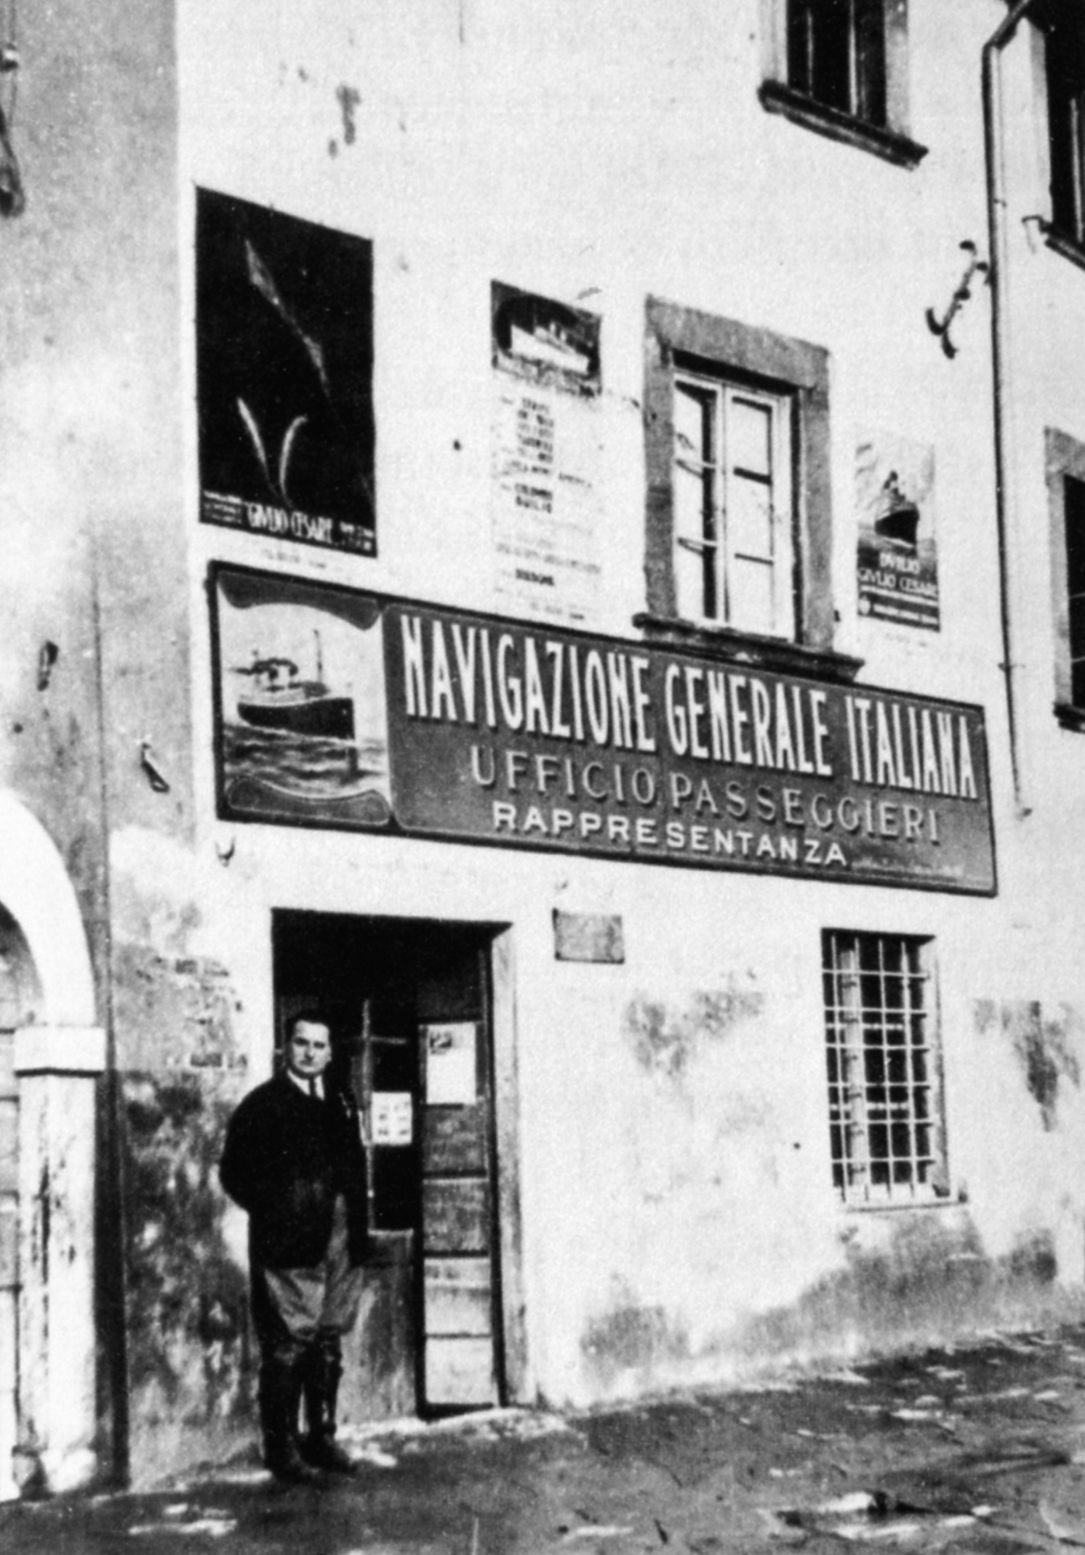 Ingresso dell'agenzia della Navigazione Generale Italiana di Gallicano (foto archivio Fondazione Paolo Cresci per la storia dell'Emigrazione italiana)